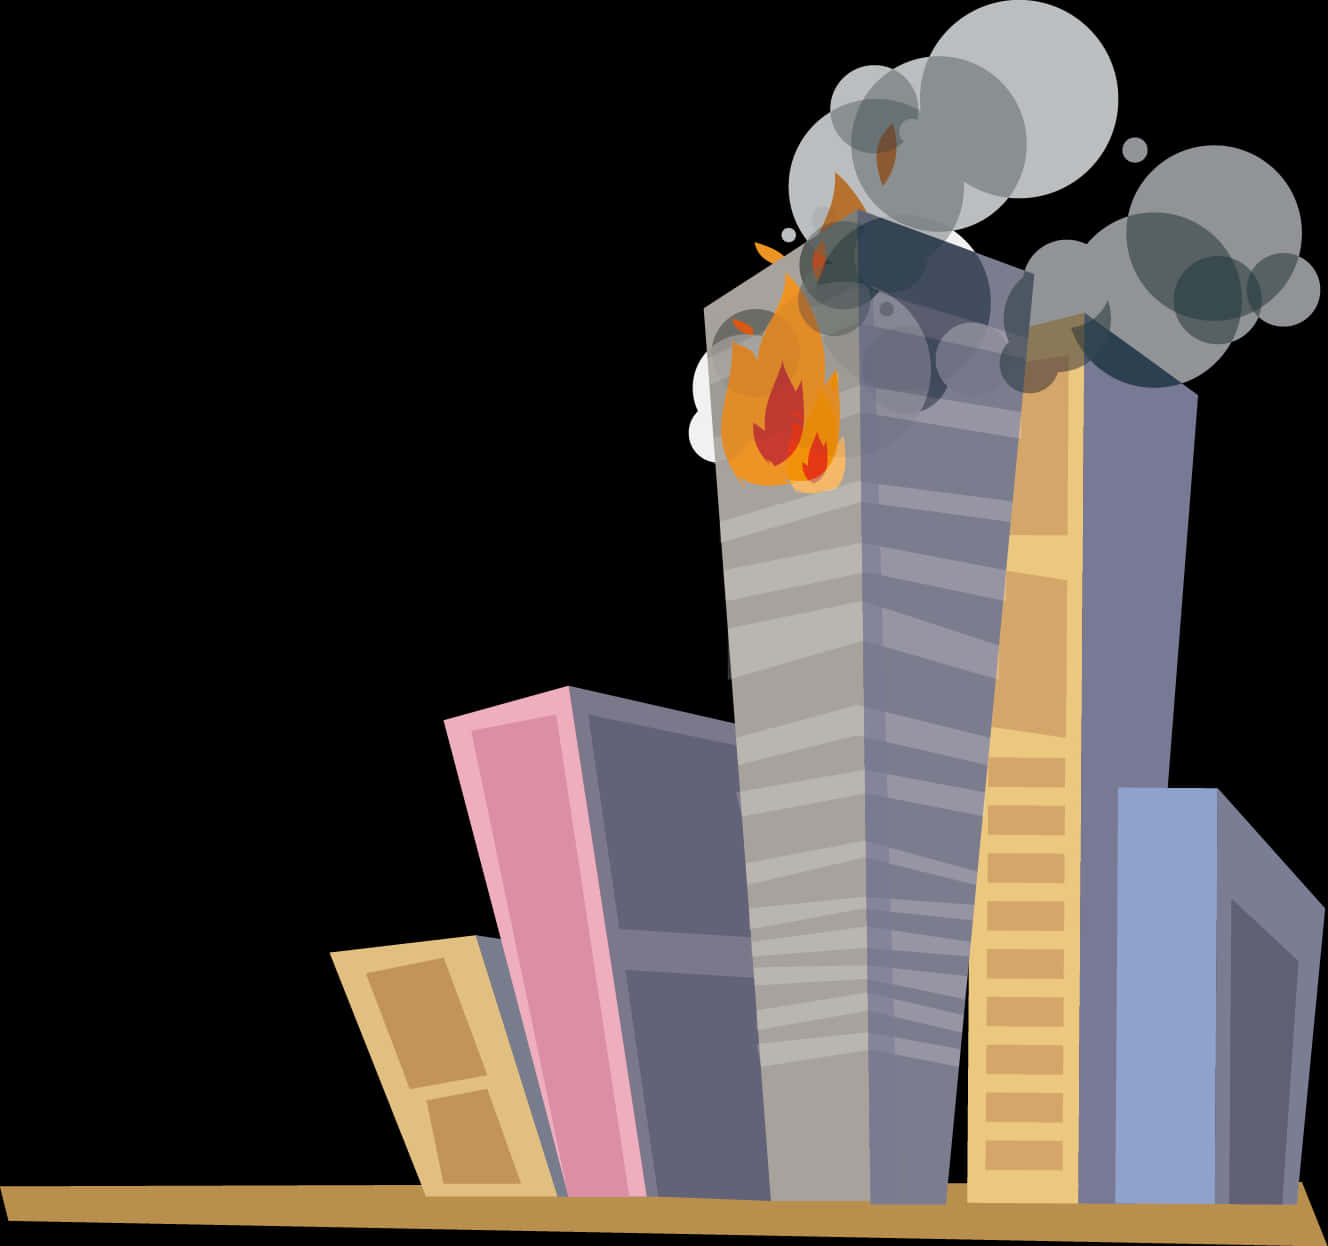 Skyscraper Fire Cartoon Illustration PNG